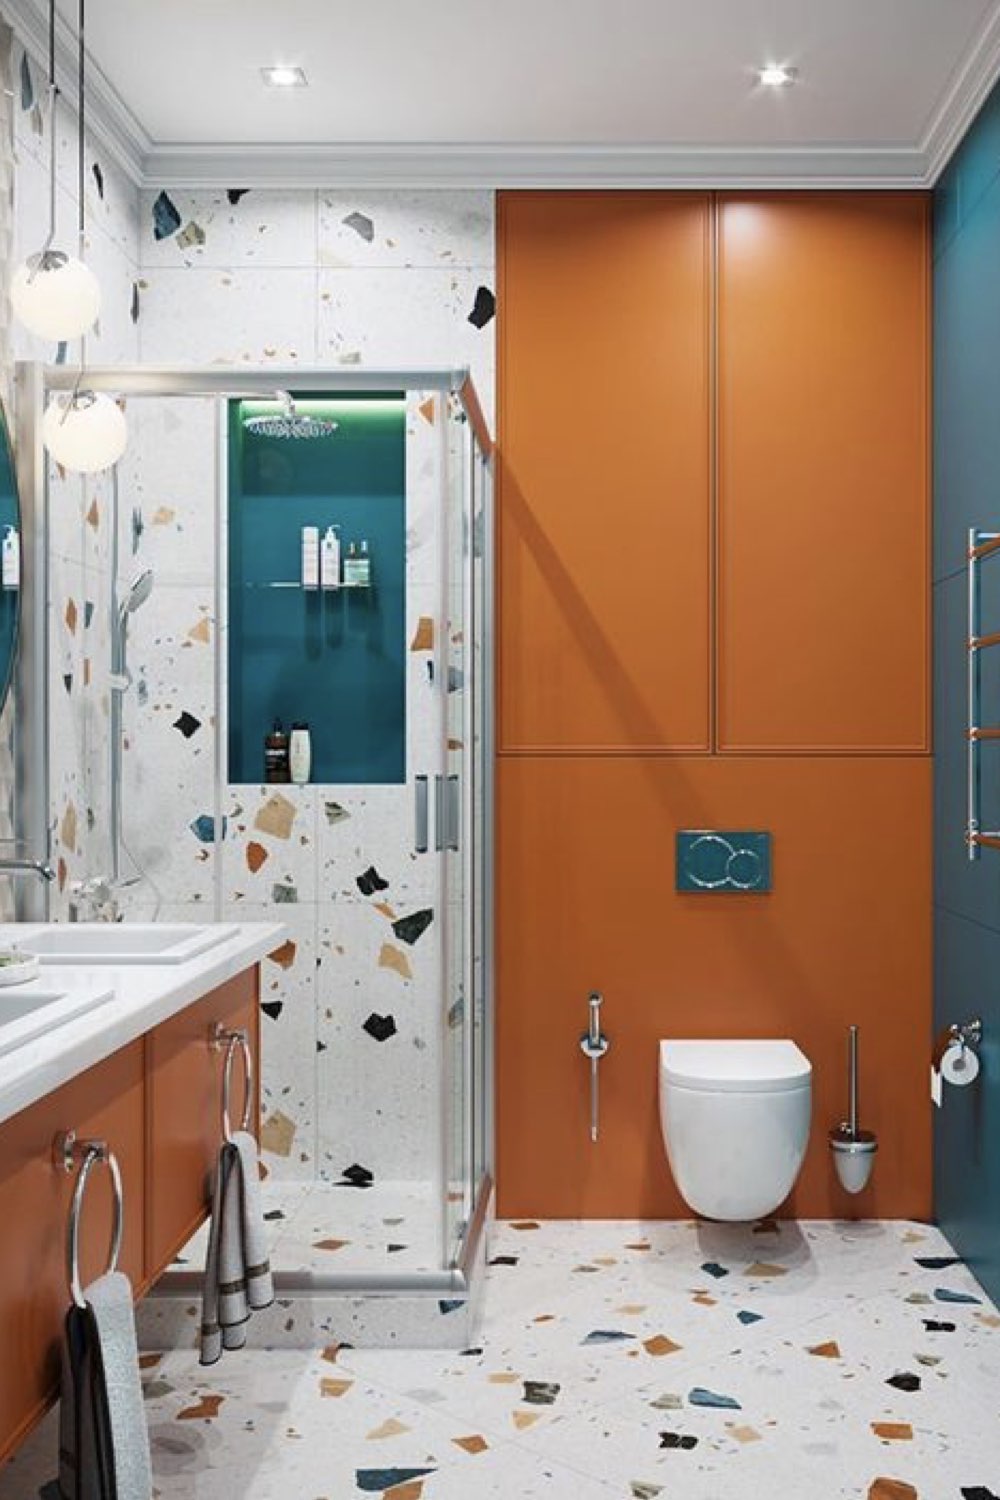 salle de bain douche deco detente moderne couleur matériaux terrazzo bleu et orange tendance